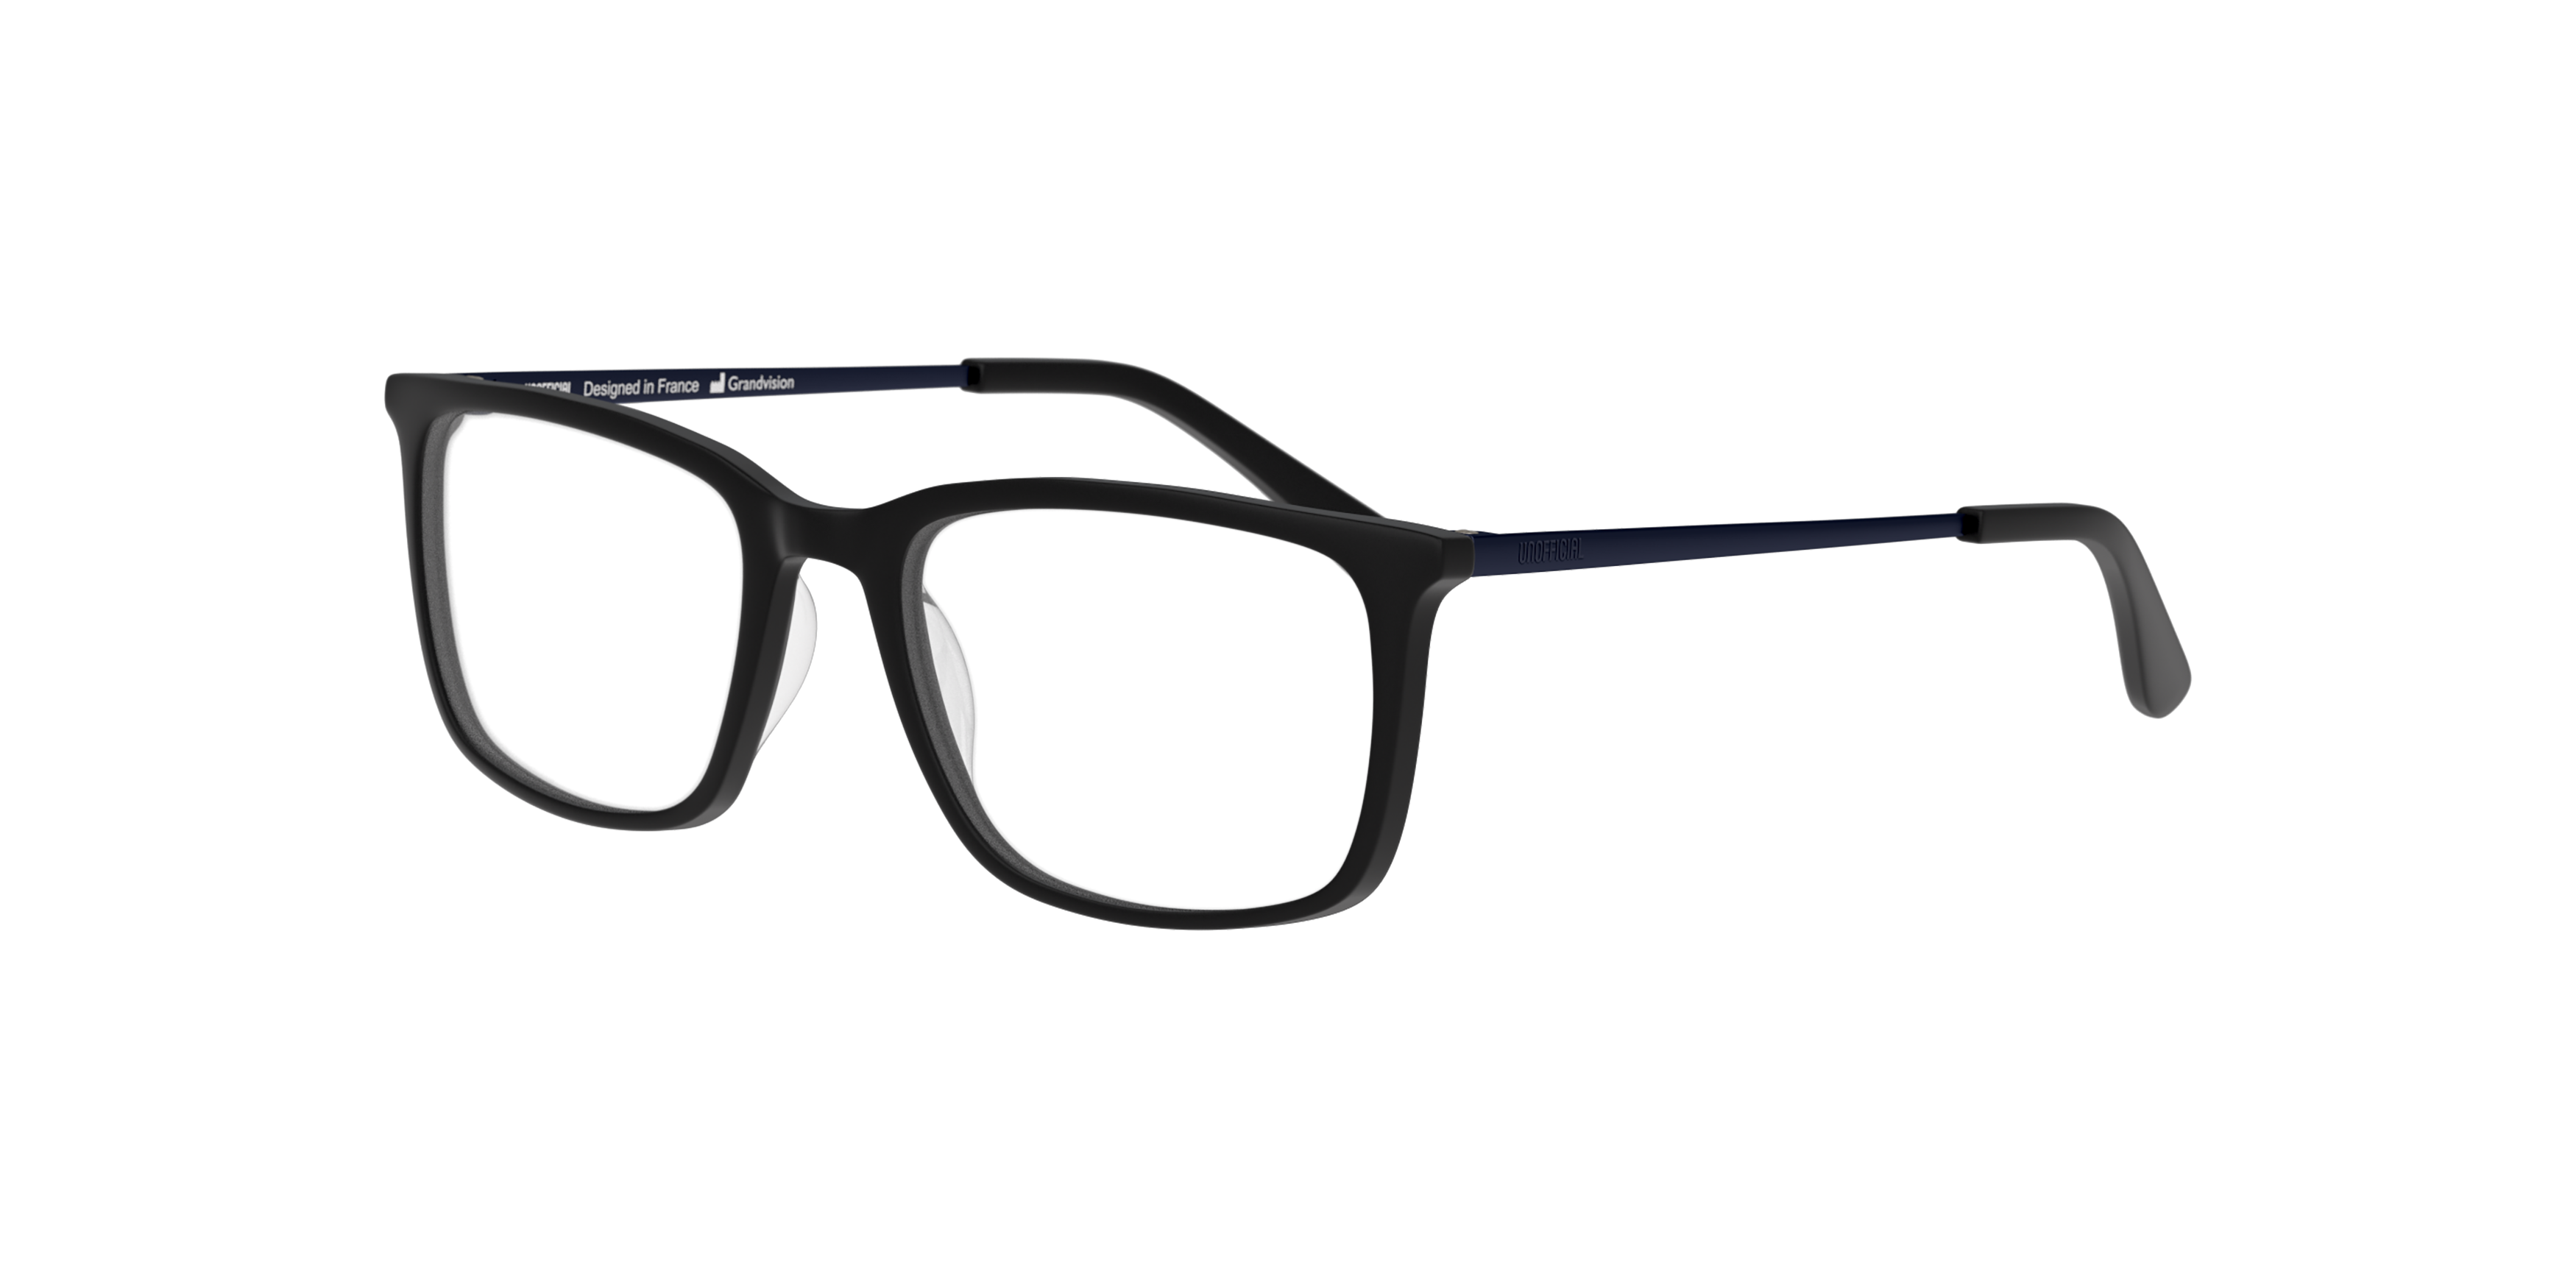 Angle_Left01 Unofficial UN OT0161 (BL00) Children's Glasses Transparent / Black